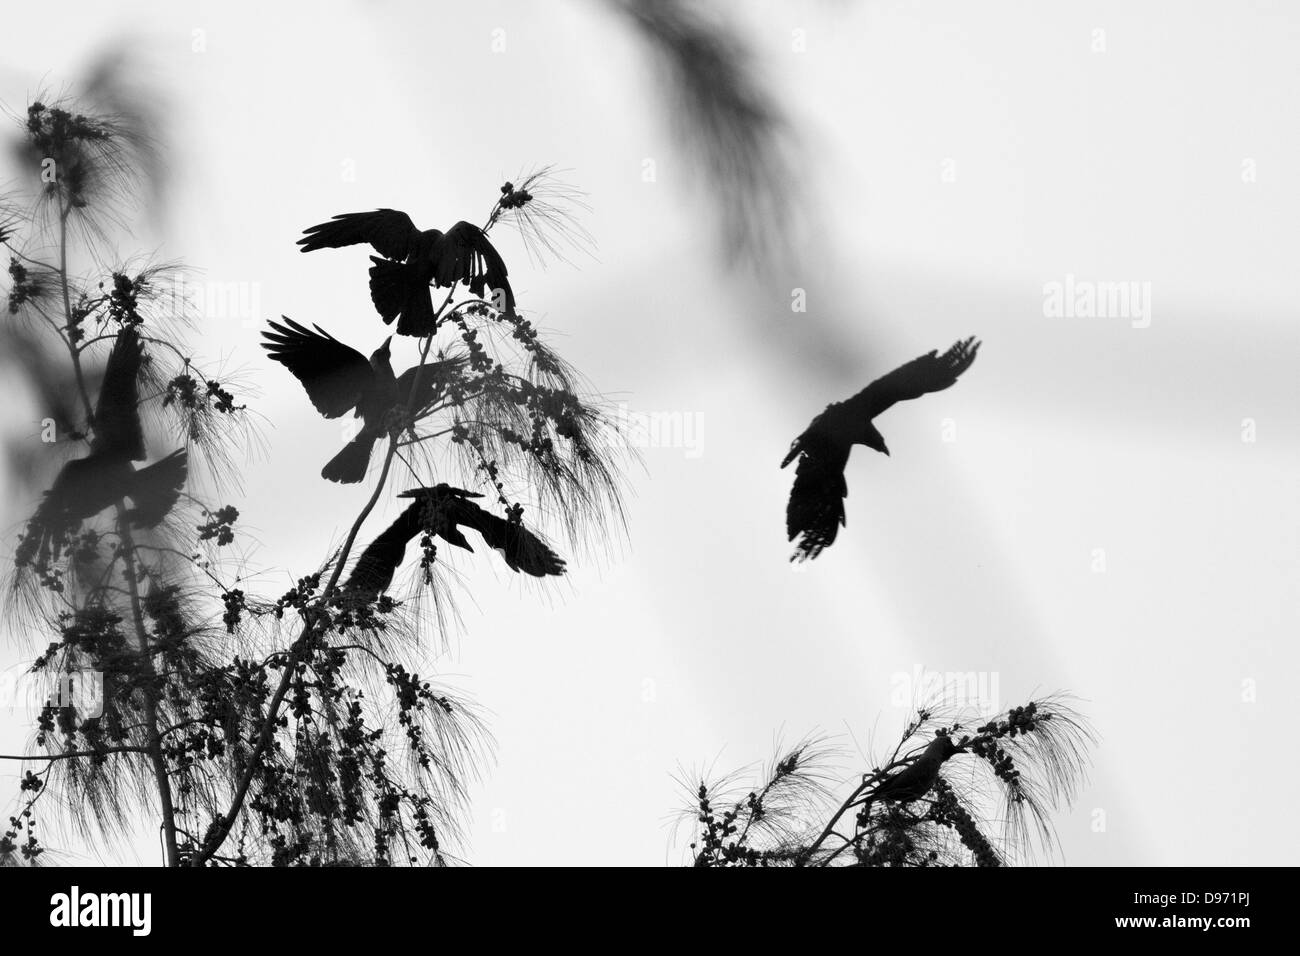 Une scène chaotique de corbeaux se percher sur un arbre Banque D'Images